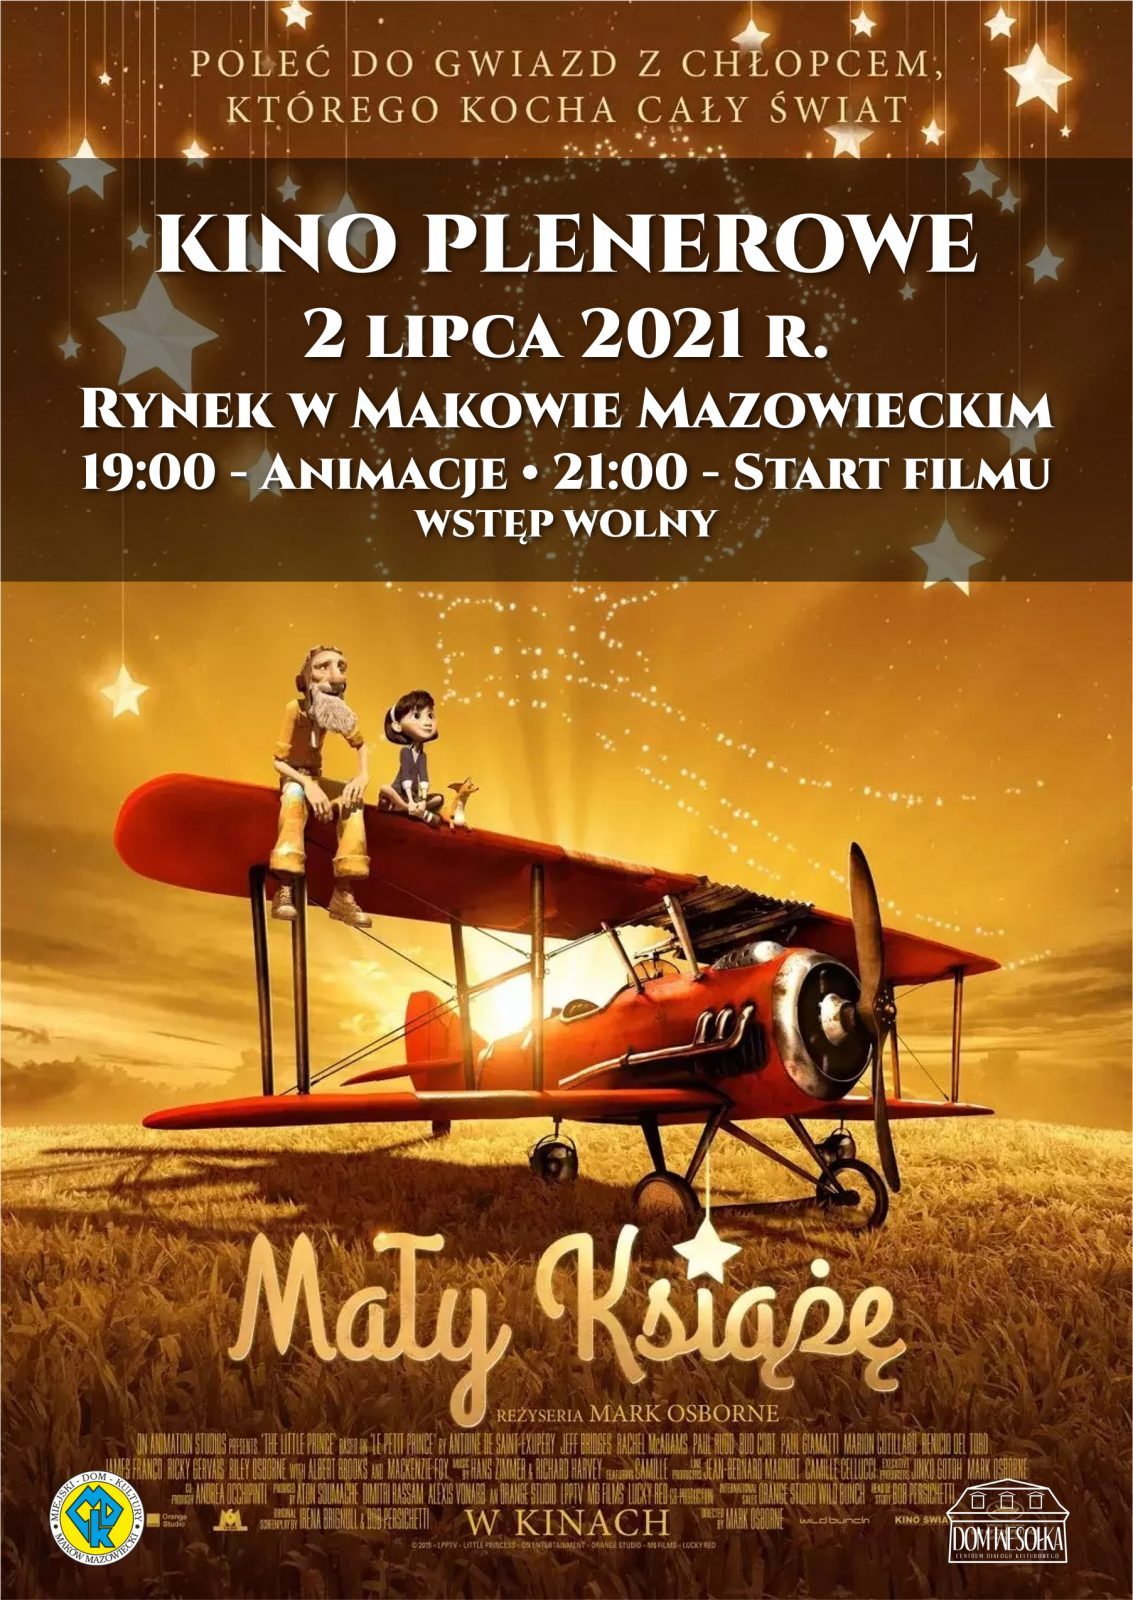 Plakat zapraszający na kino plenerowe i seans Mały Książę 2 lipca 2021. Rynek Miejski, animacje 19:00, seans 21:00. 